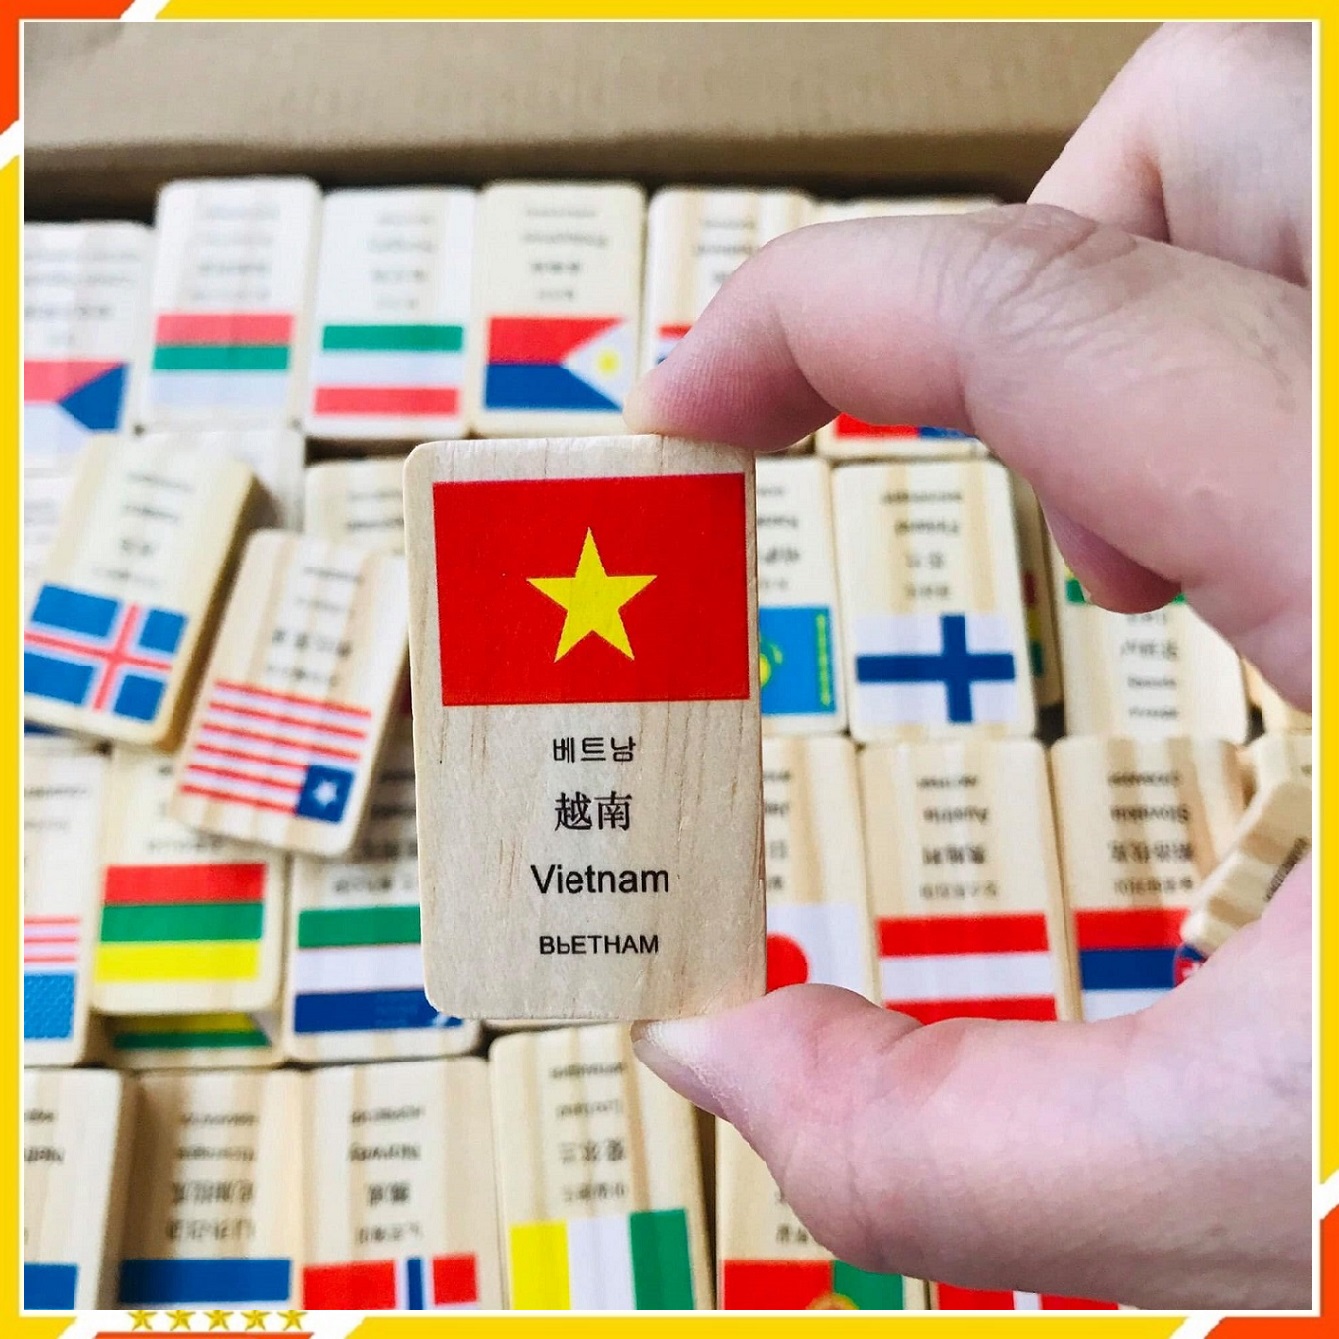 Bộ Domino cờ các nước Freeship Trò chơi xếp cờ Domino 100 quốc gia bằng gỗ cho bé  Đồ chơi xếp gỗ tạo hiệu ứng Domino in hình lá cờ nhiều nước